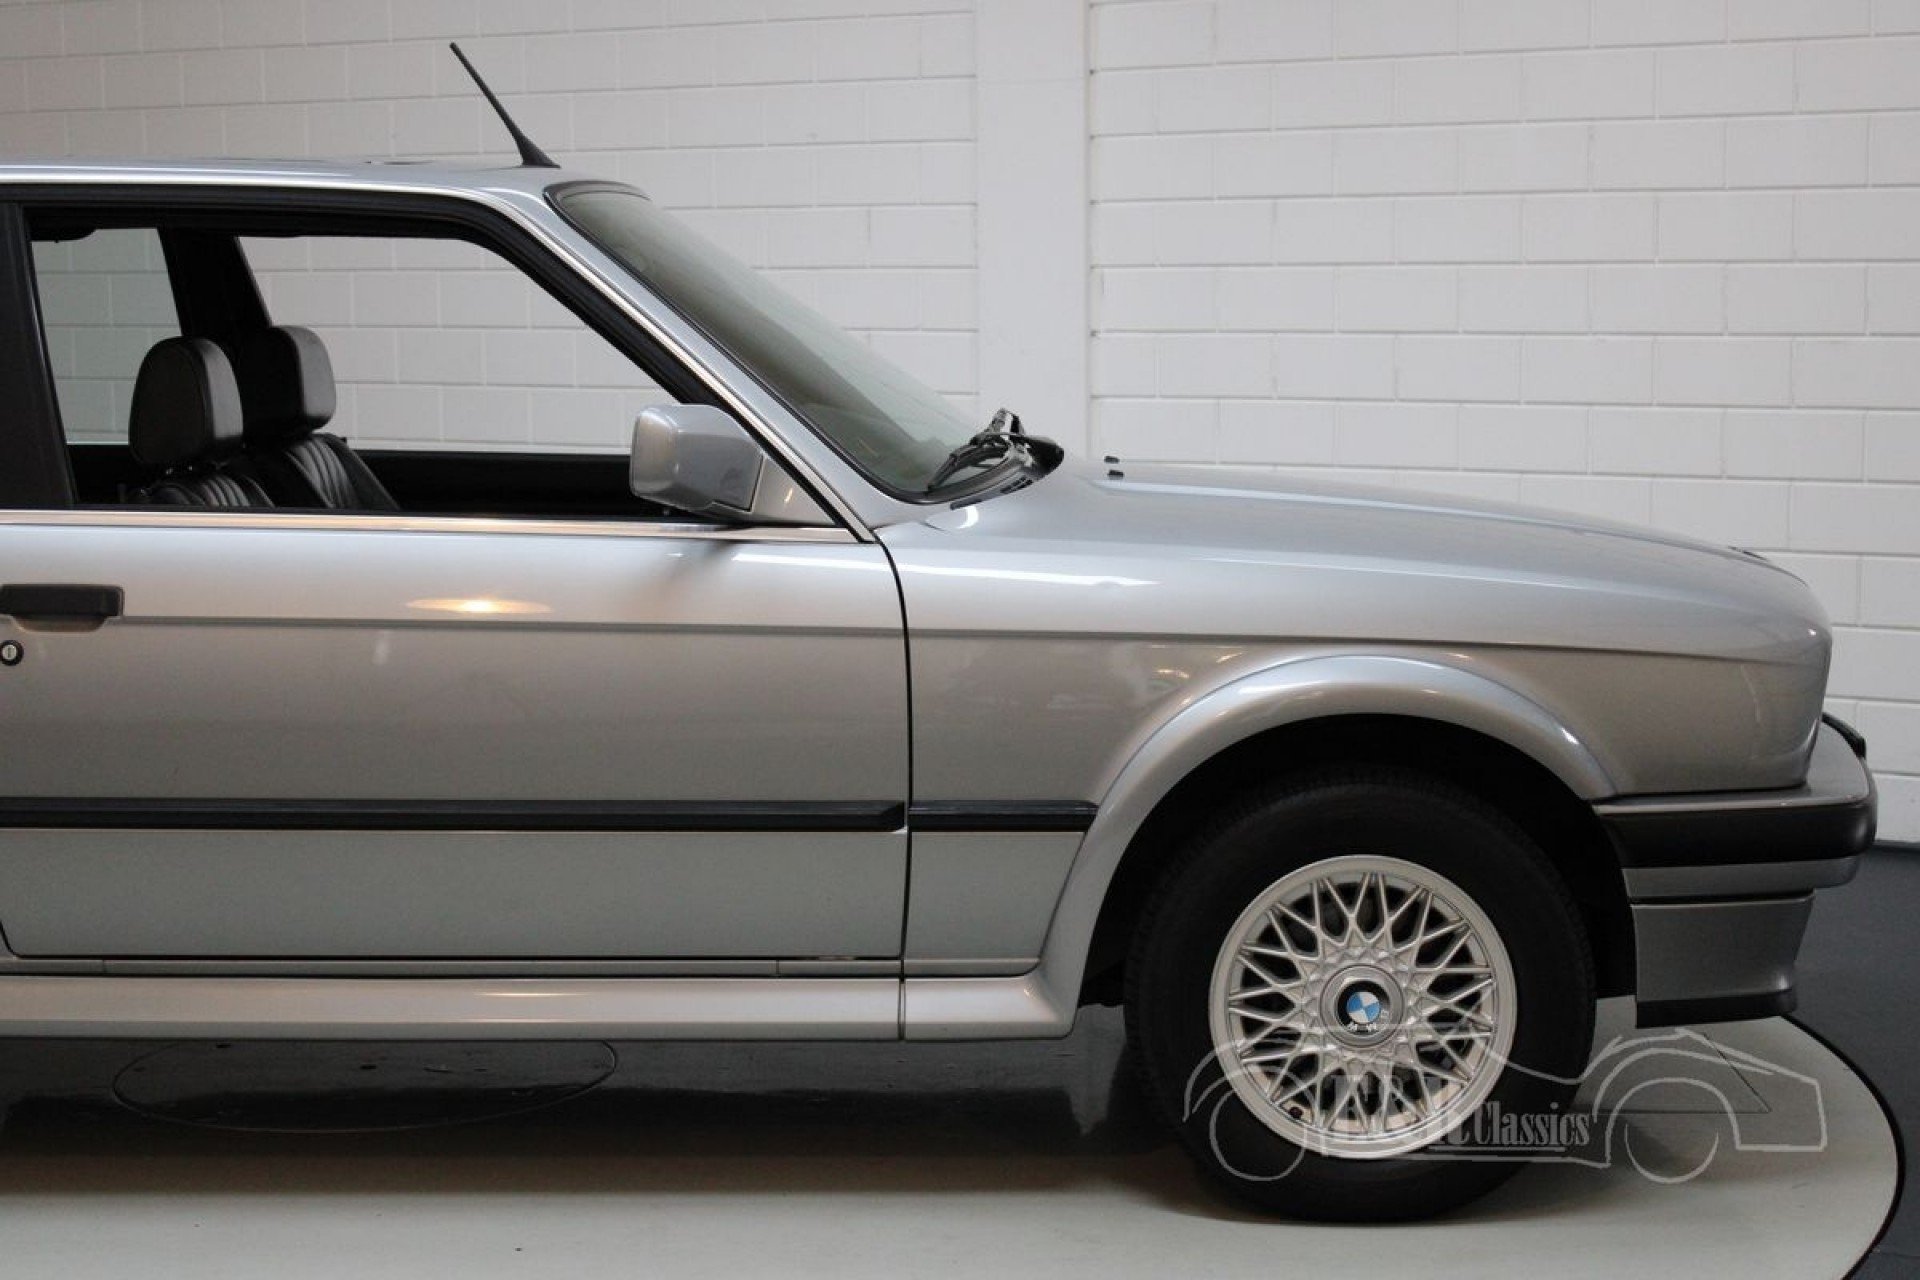 BMW 325 IX 1988、ERclassicsで販売